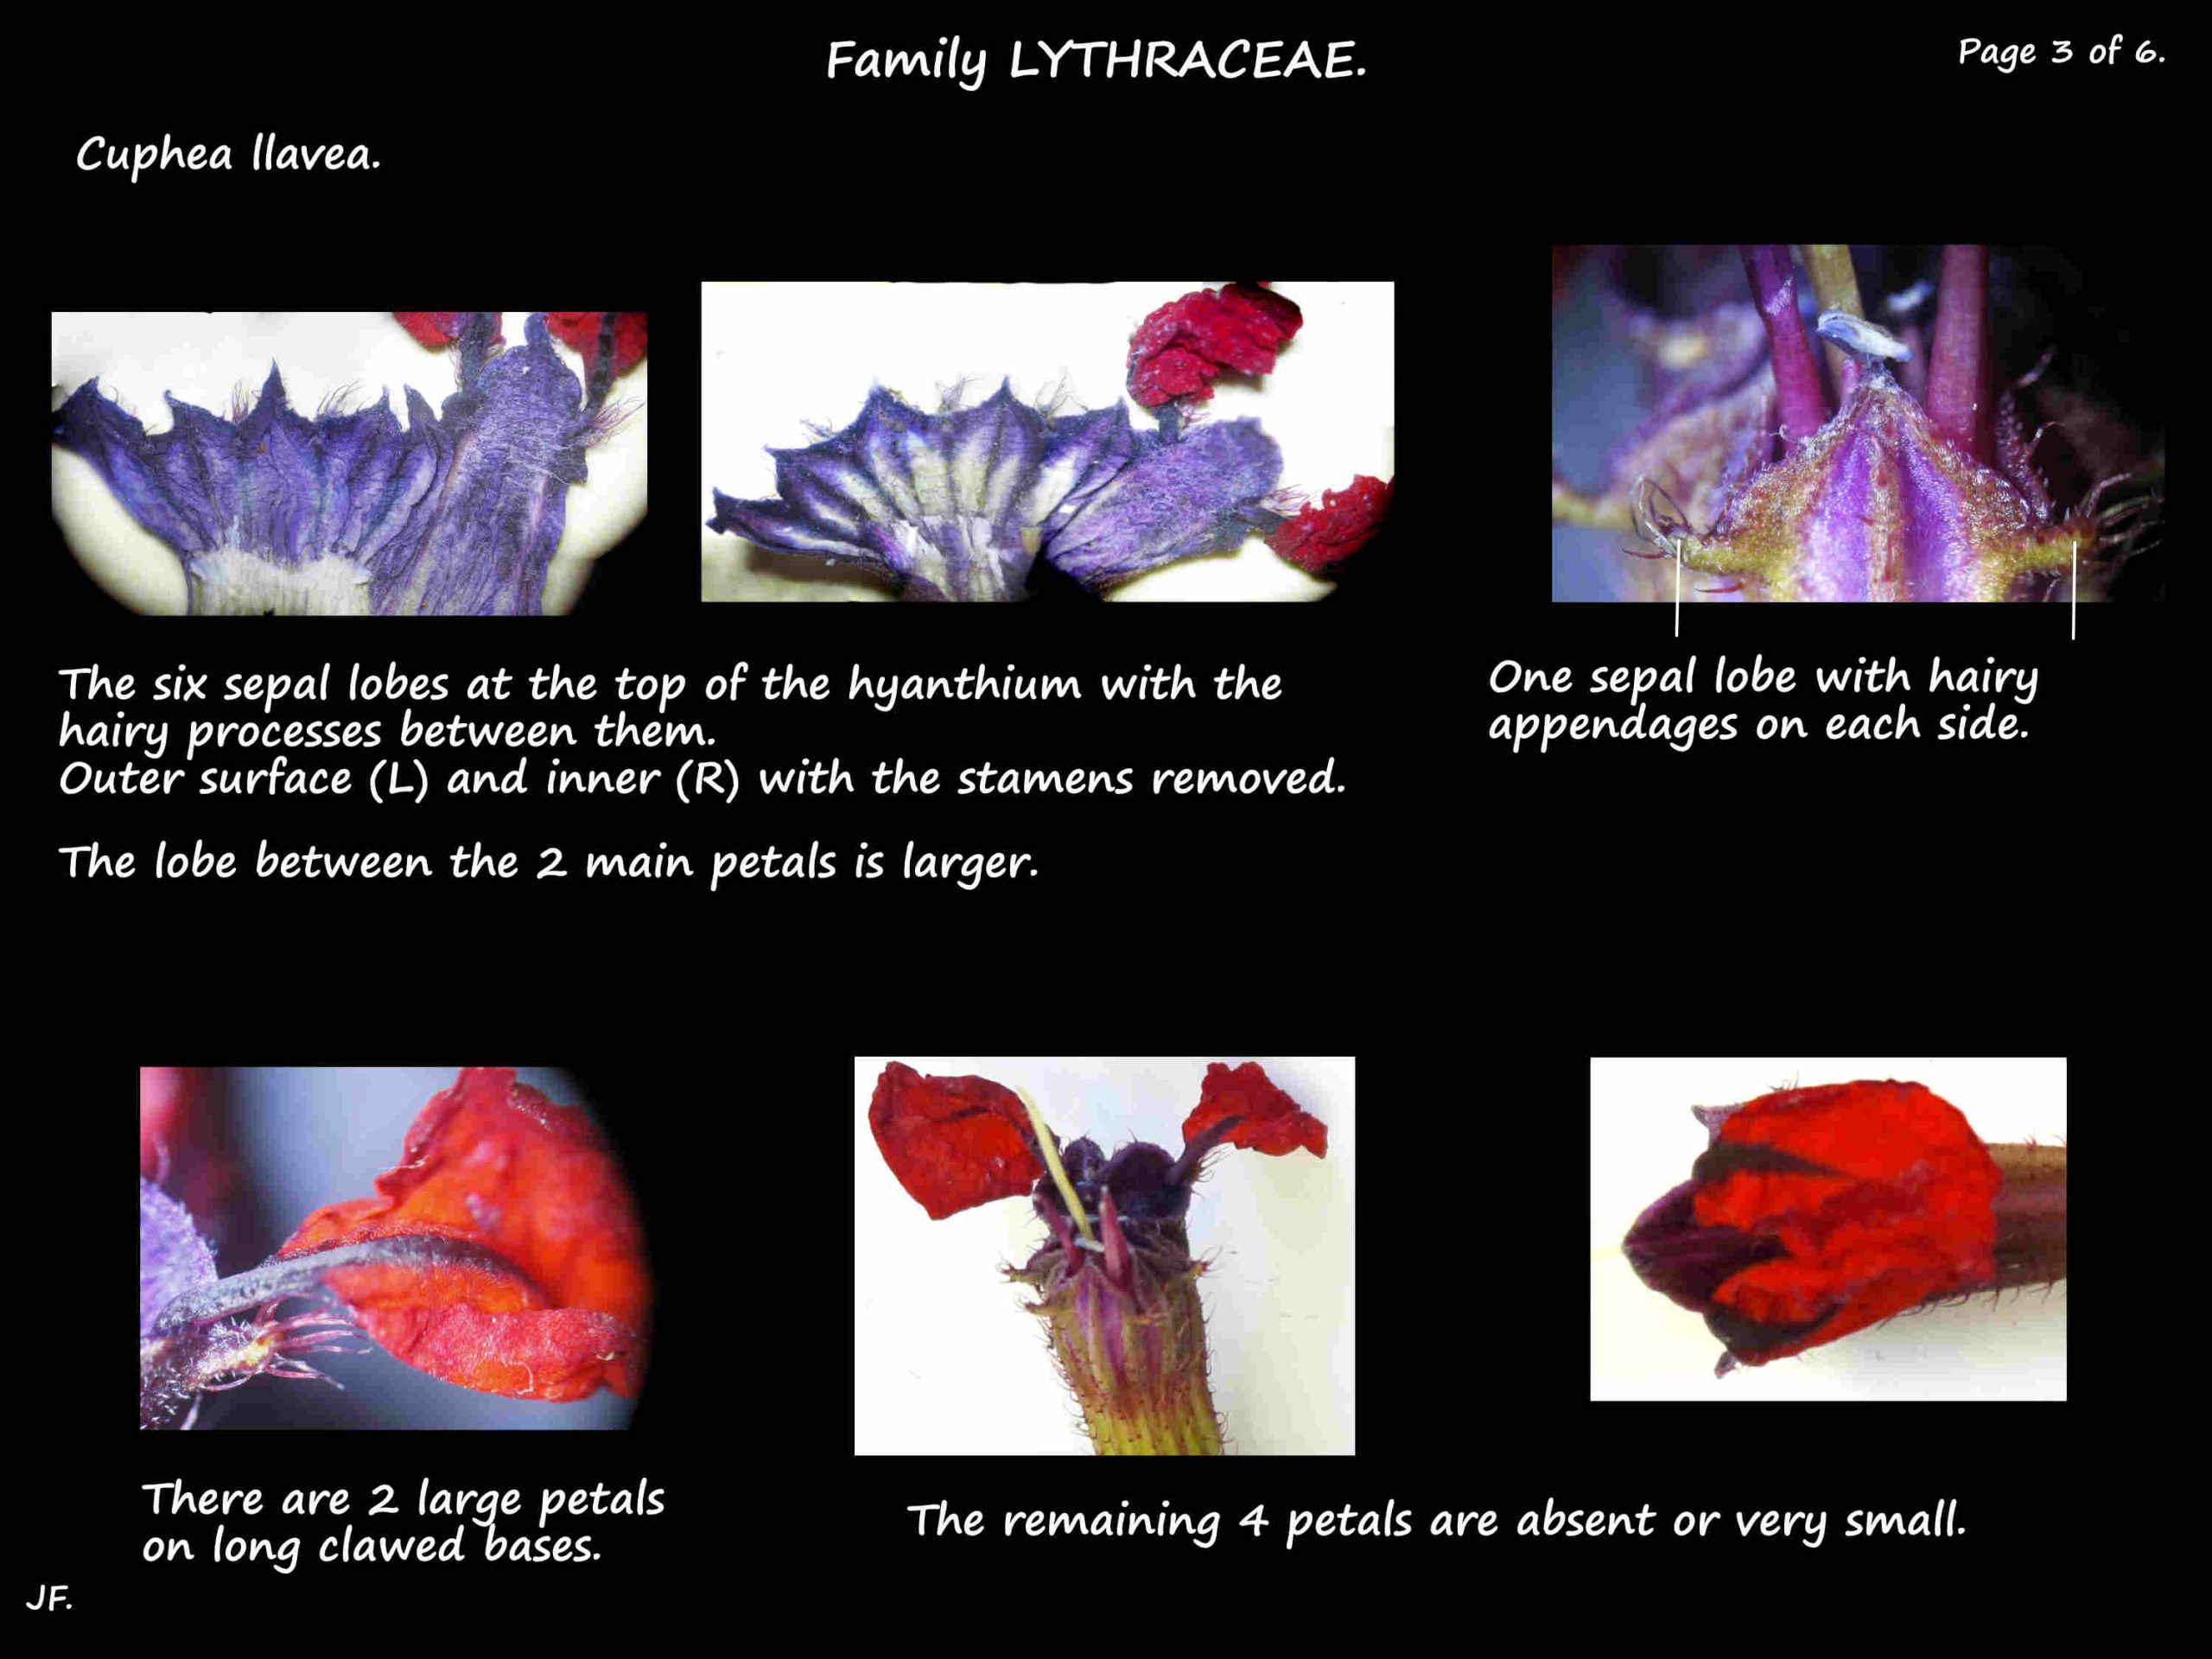 3 Cuphea llavea sepals & petals